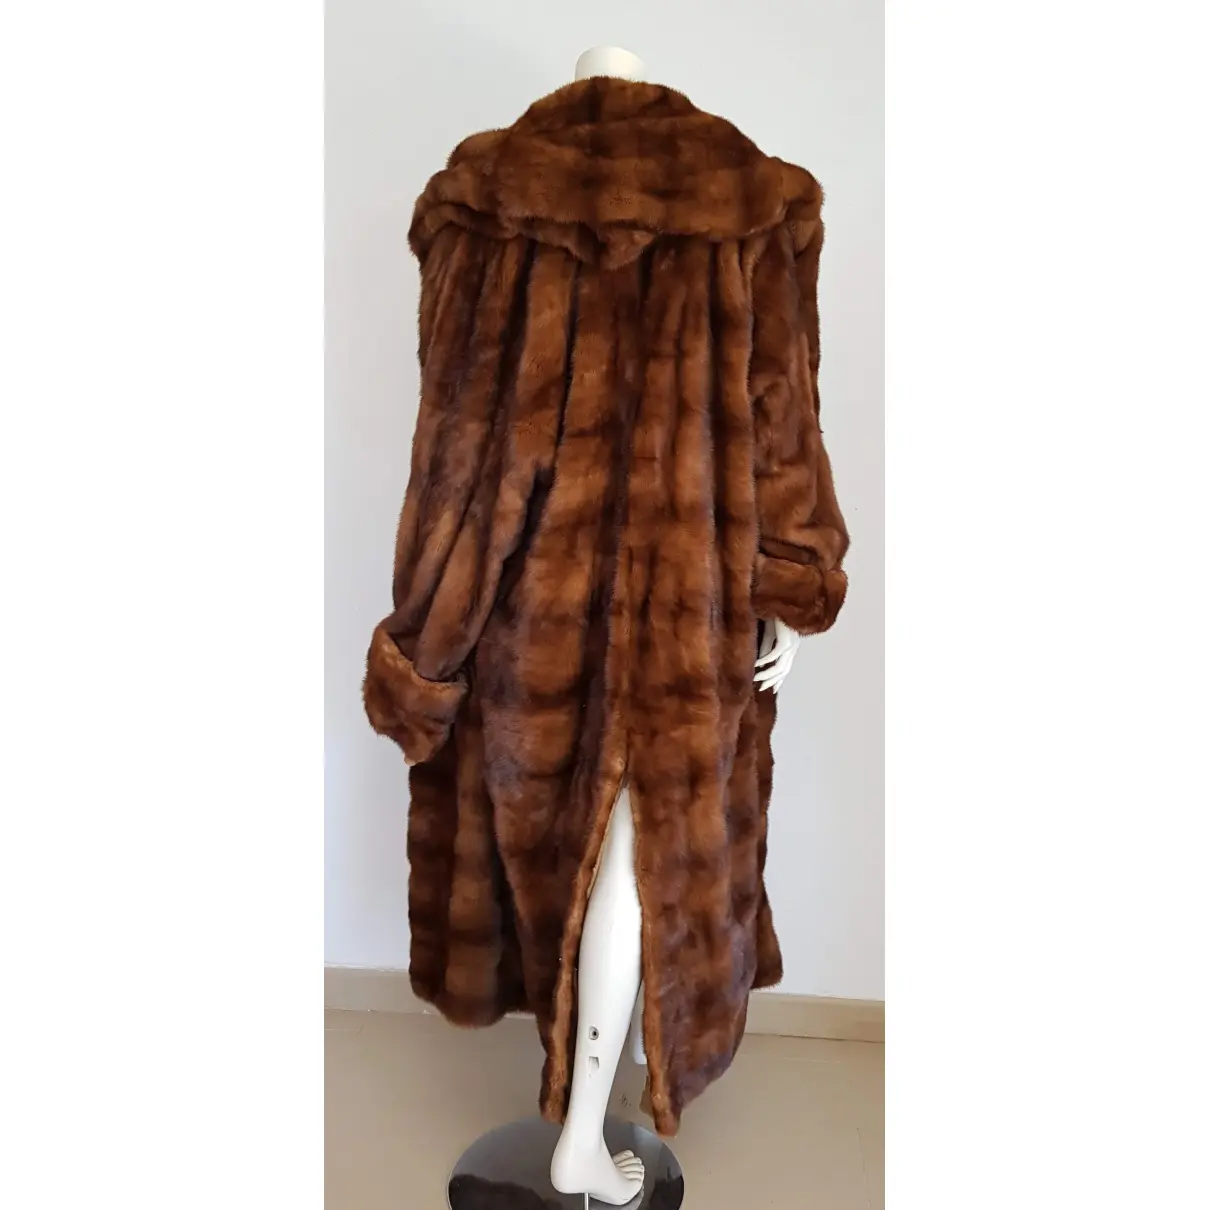 Buy Gianfranco Ferré Mink coat online